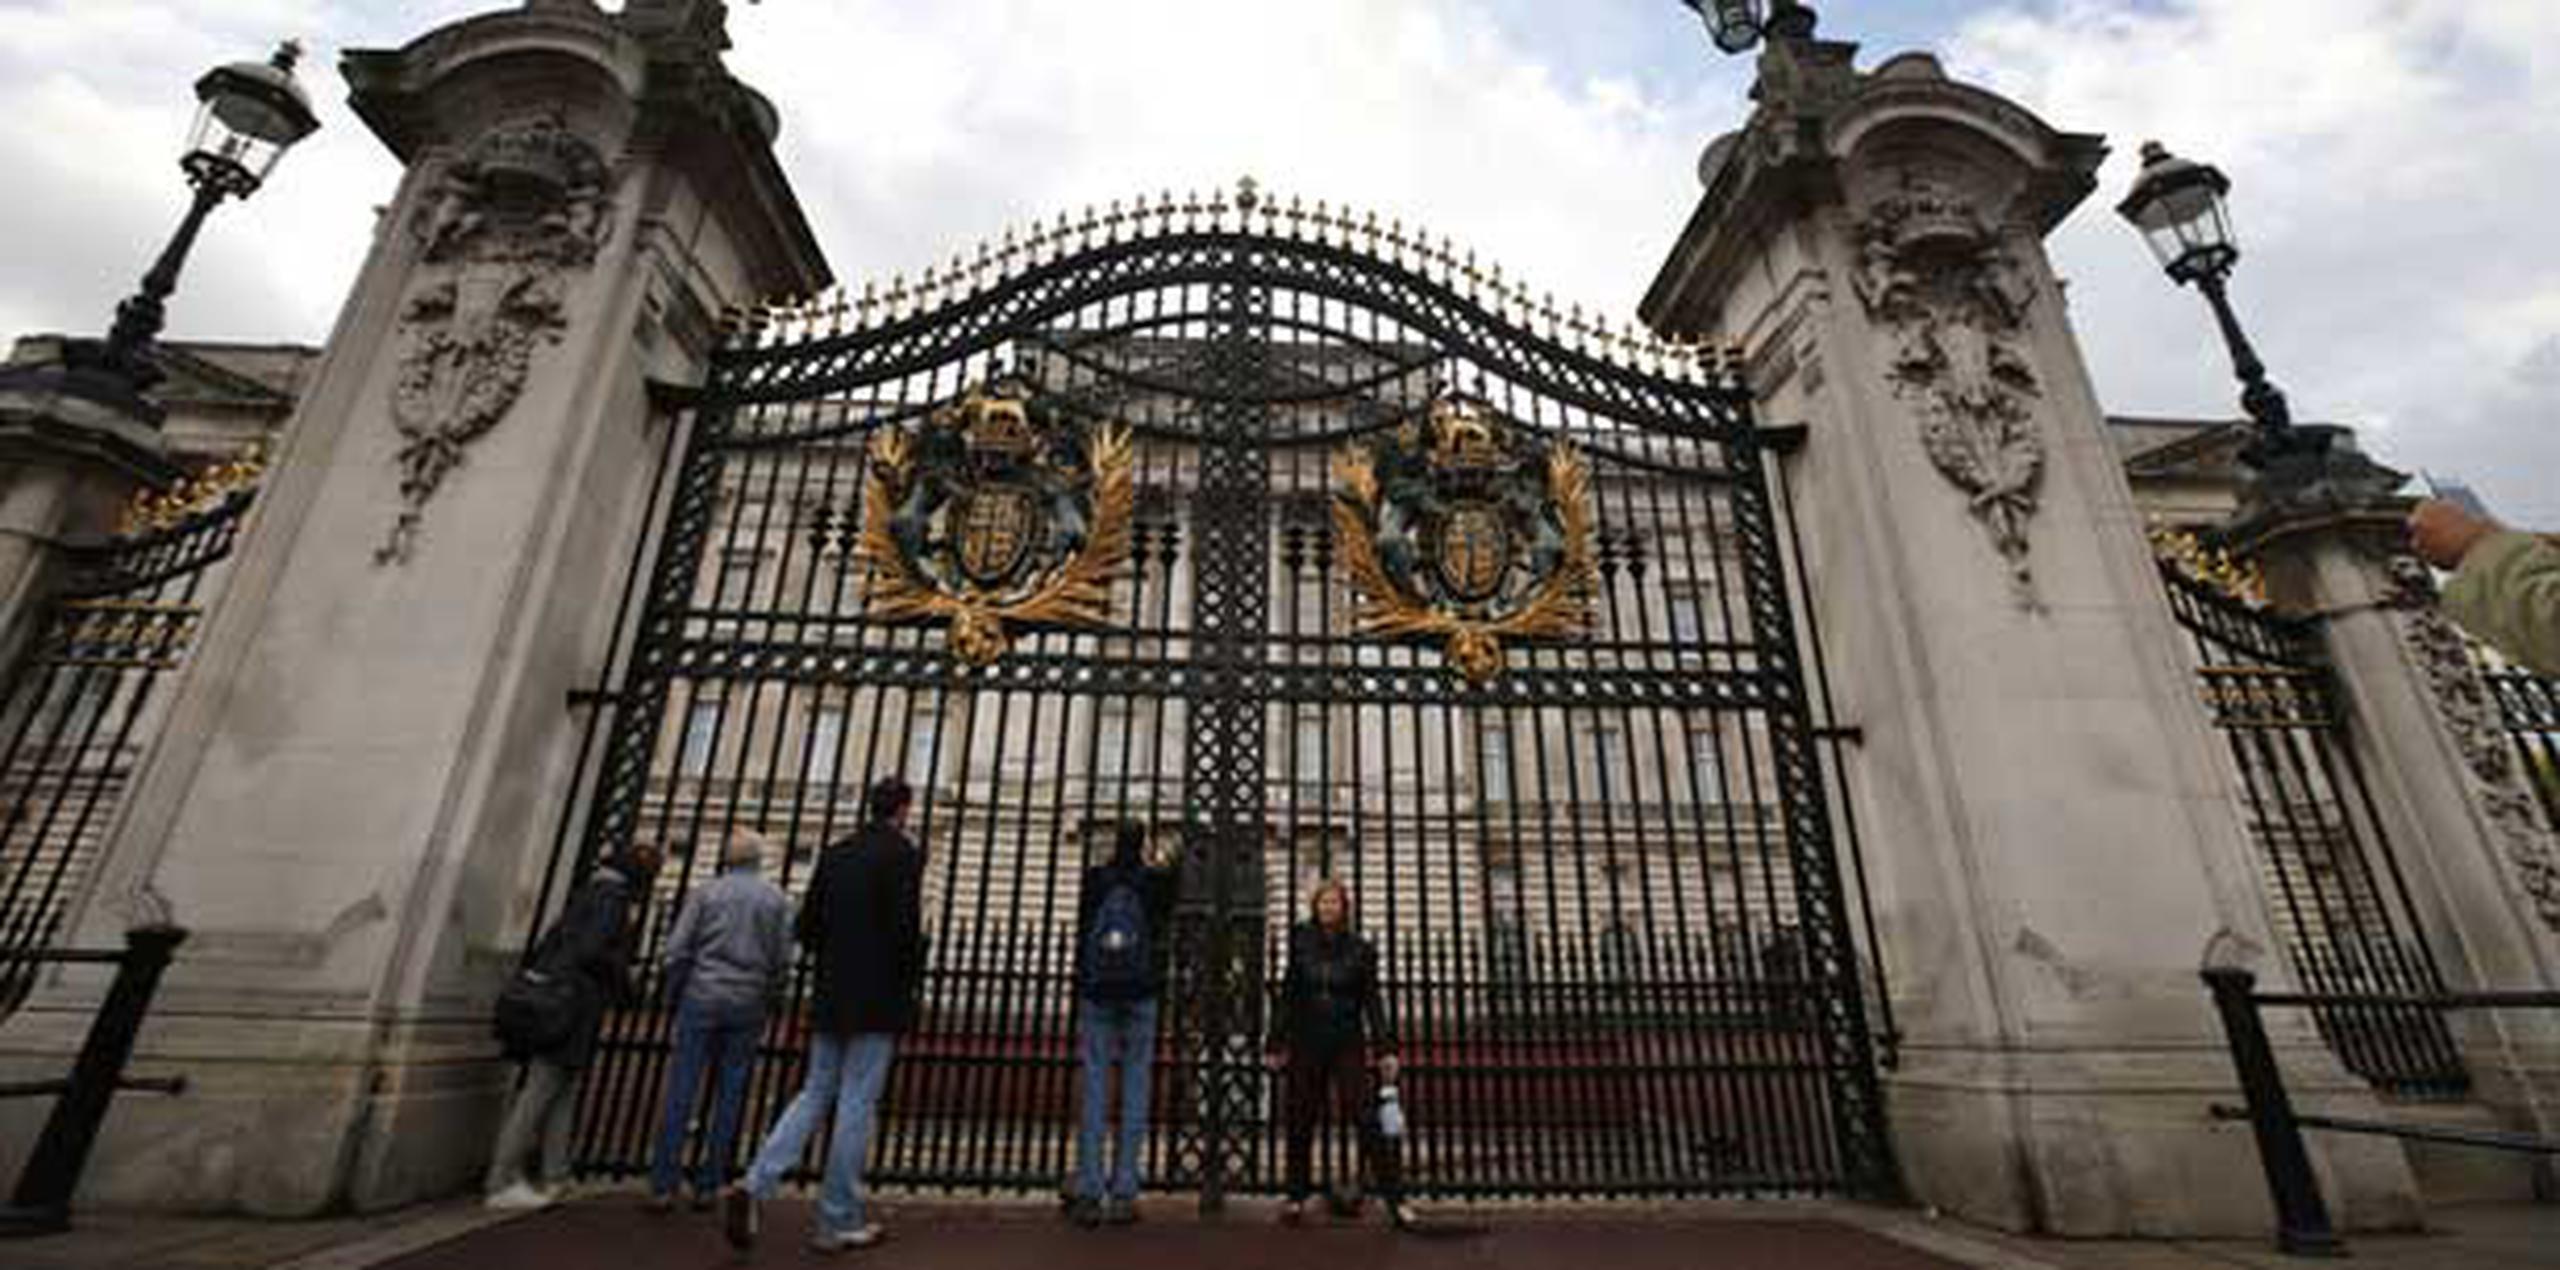 La reina Isabel II no se encontraba en el Palacio de Buckingham cuando el hombre fue arrestado.  (AP/Lefteris Pitarakis)